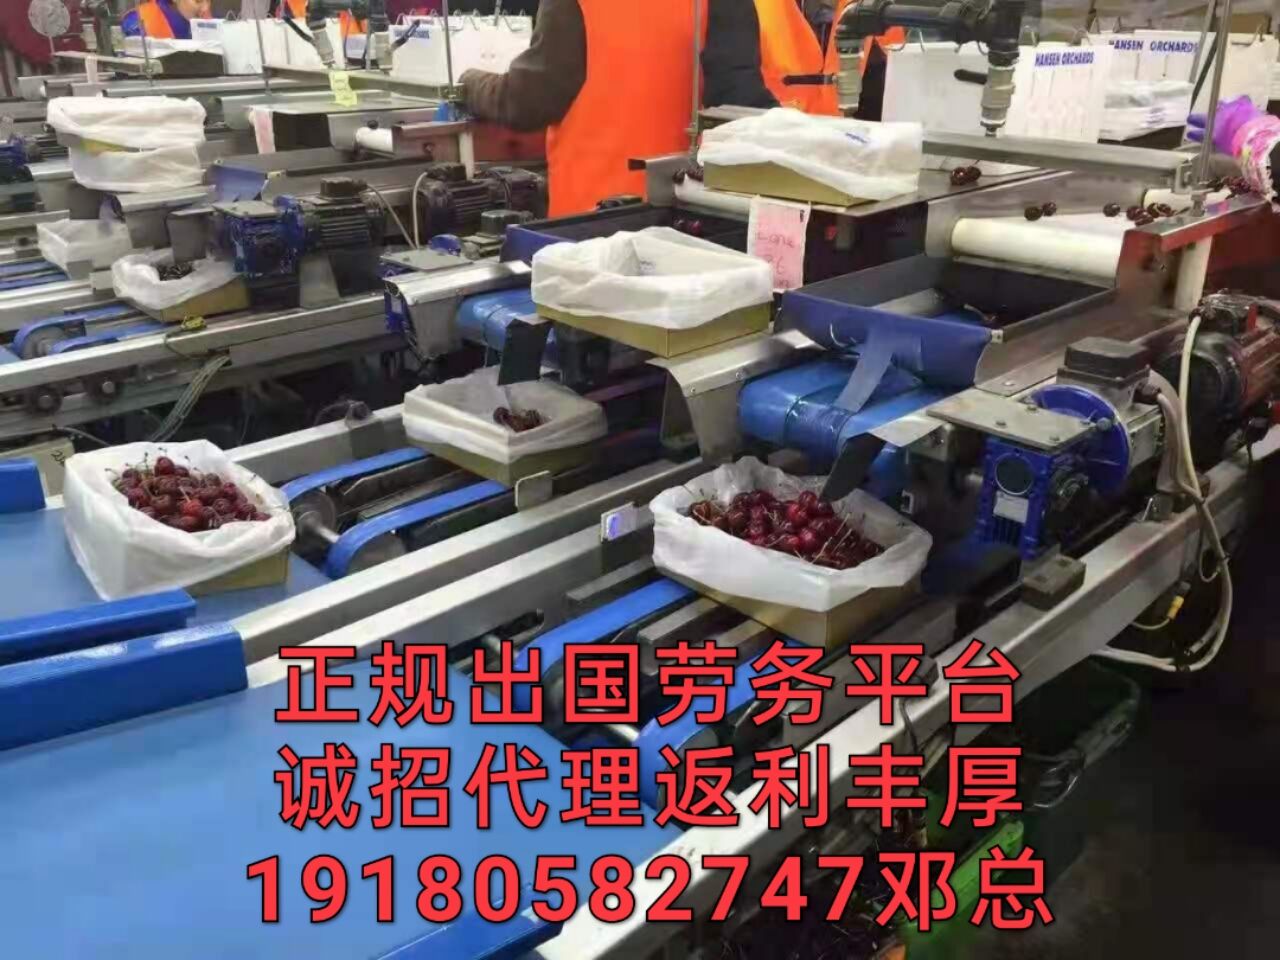 湘东区出国劳务工作普工月薪3万